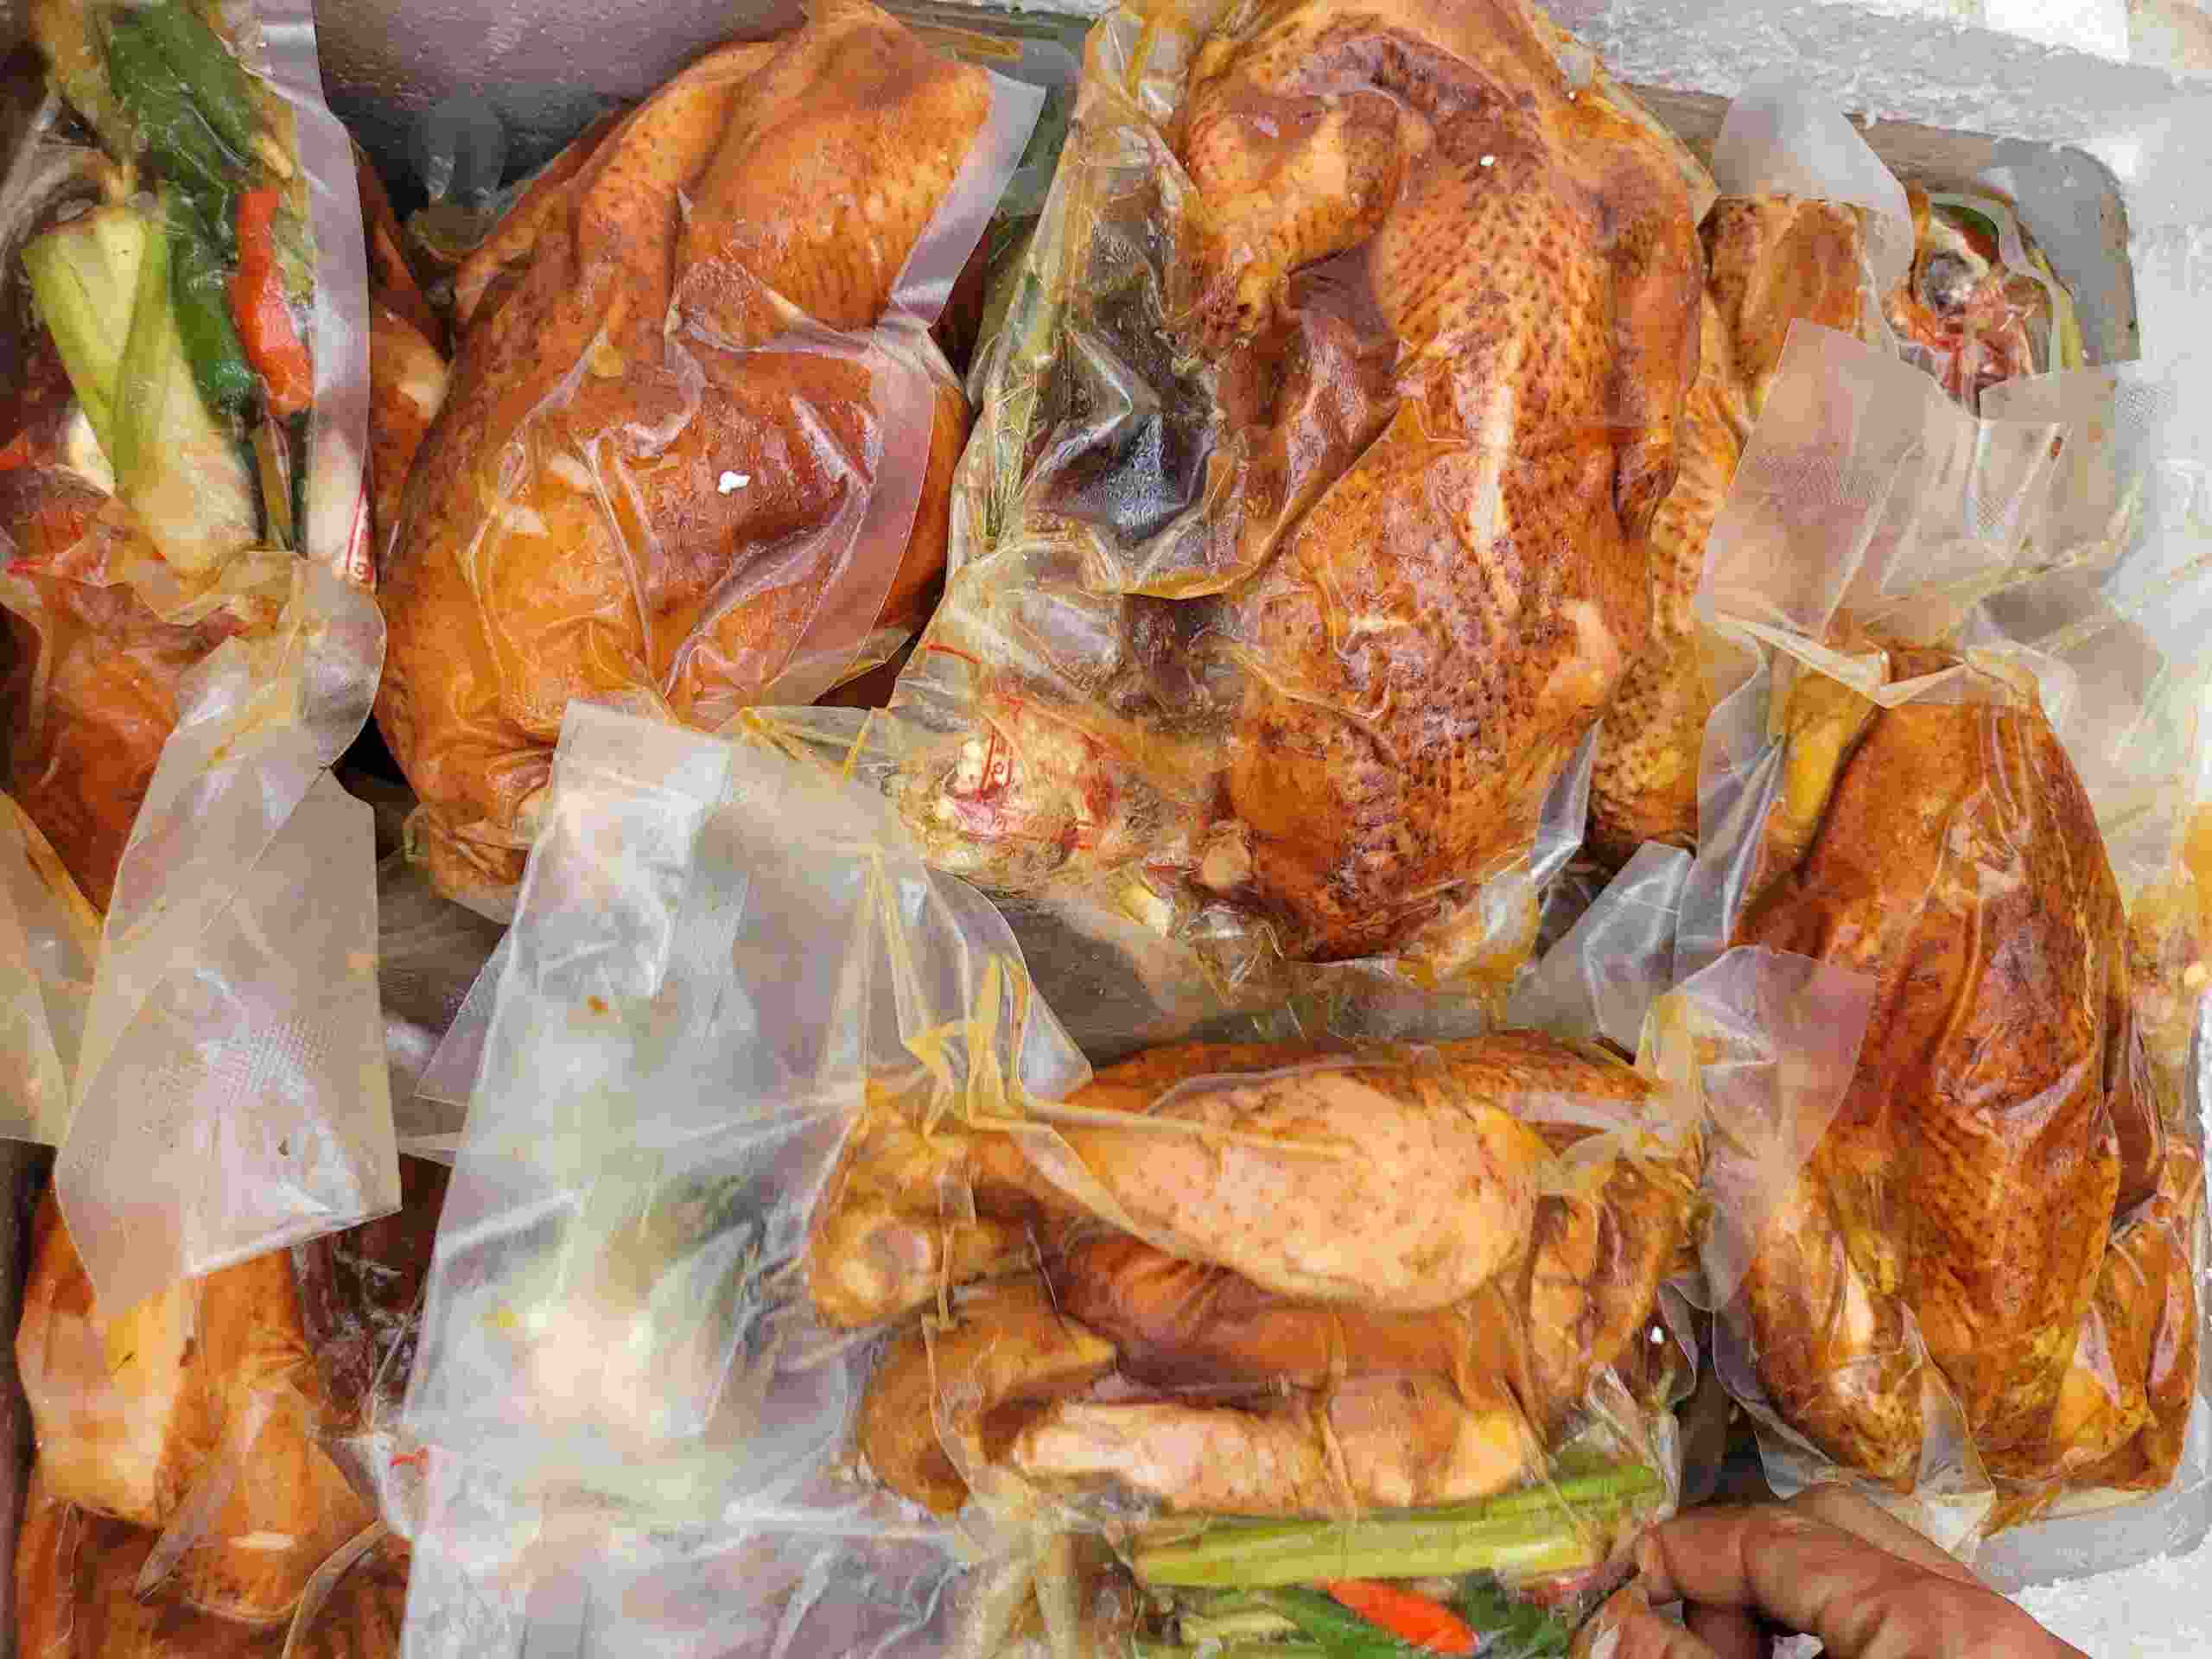 568kg thịt gà đã qua sơ chế không có giấy chứng nhận kiểm dịch